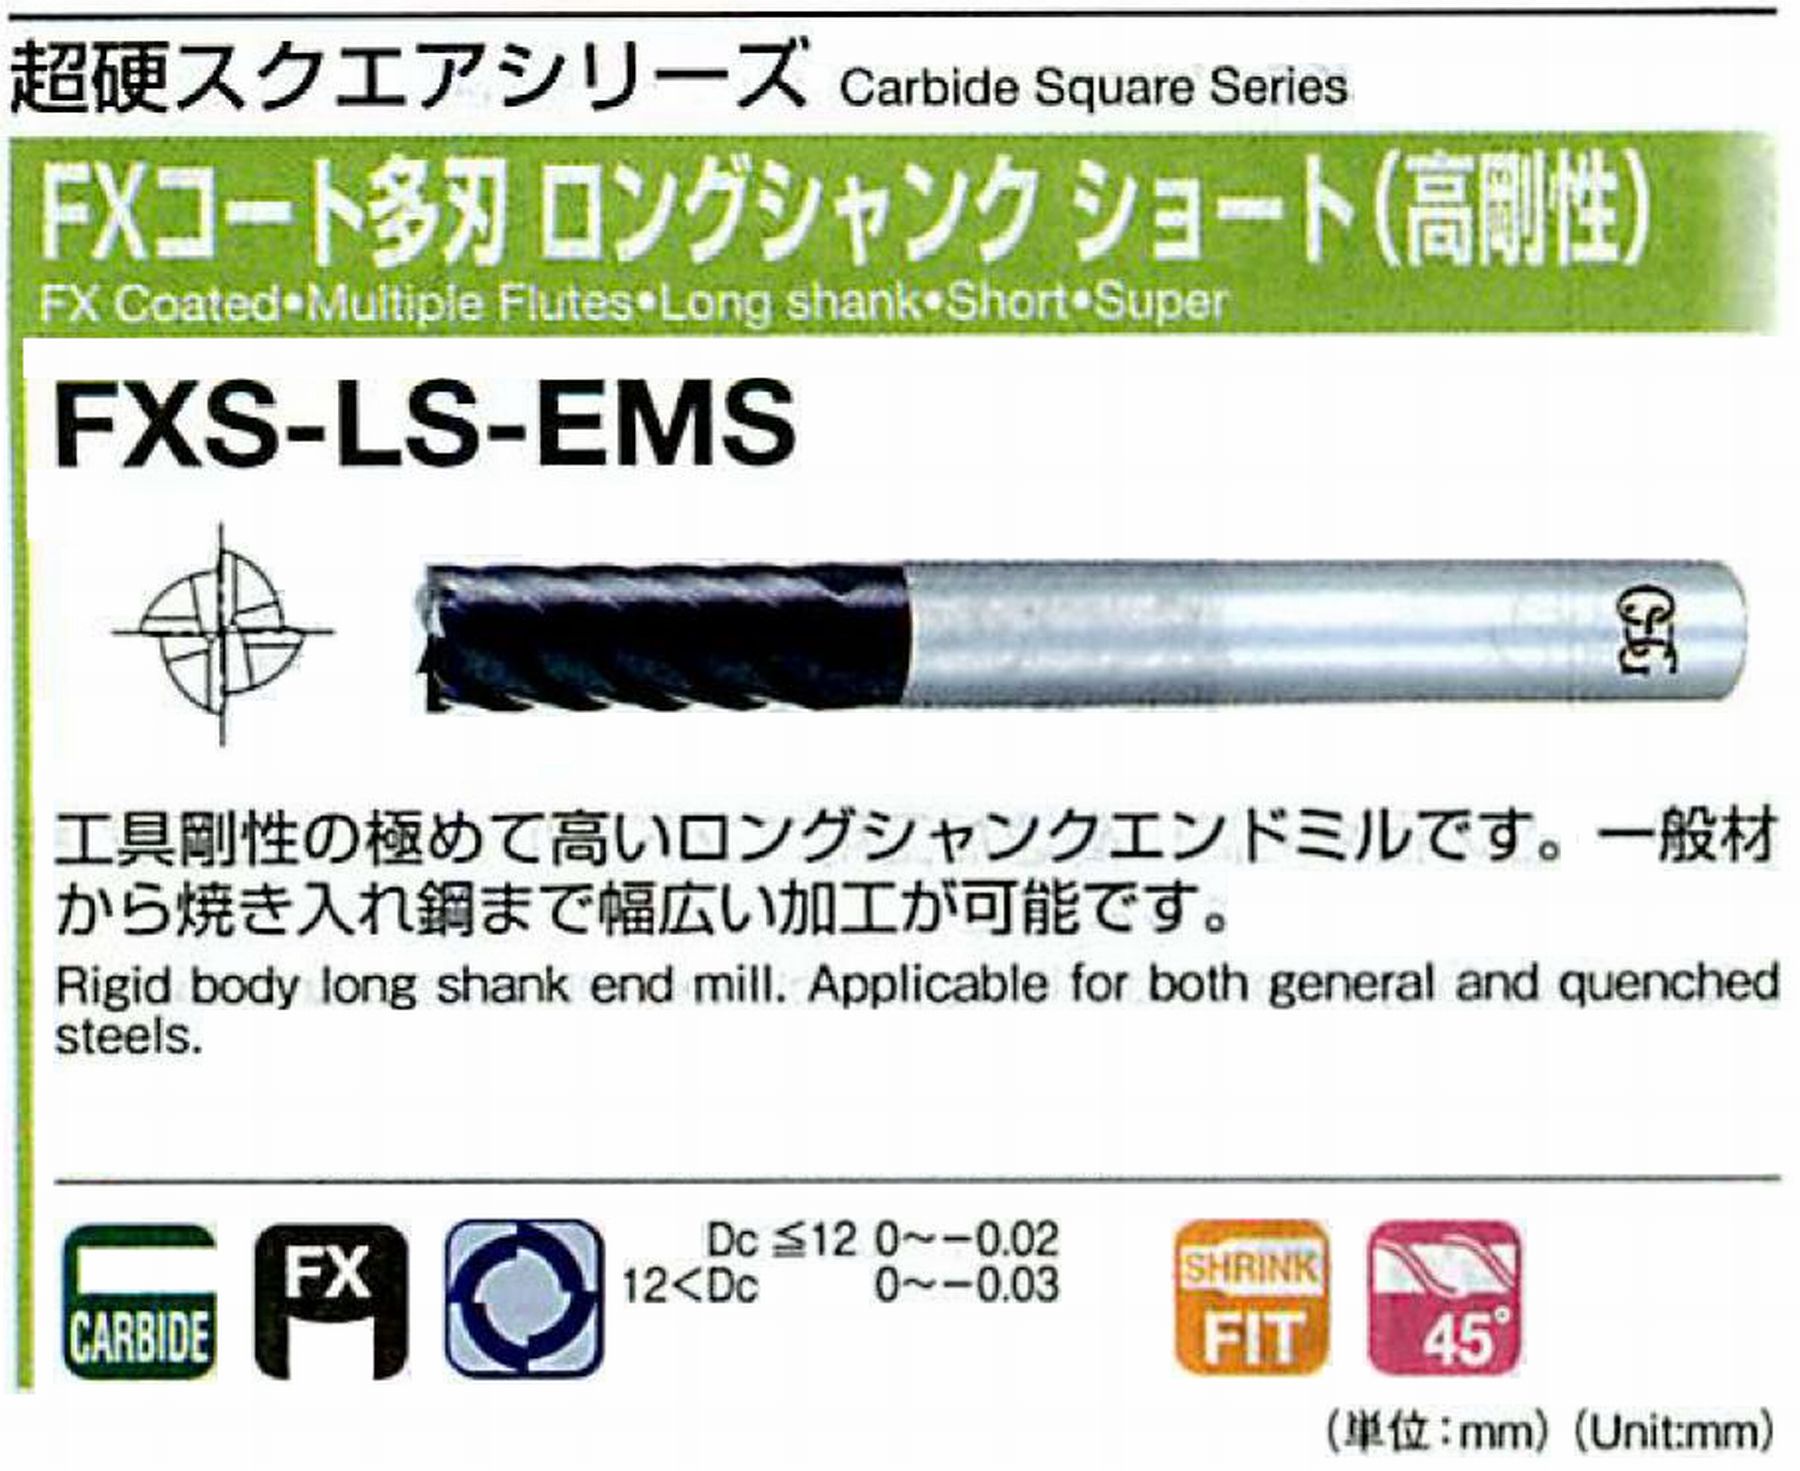 オーエスジー/OSG FXコート多刃 ロングシャンクショート(高剛性) FXS-LS-EMS 外径30 全長200 刃長55 シャンク径32mm 刃数8